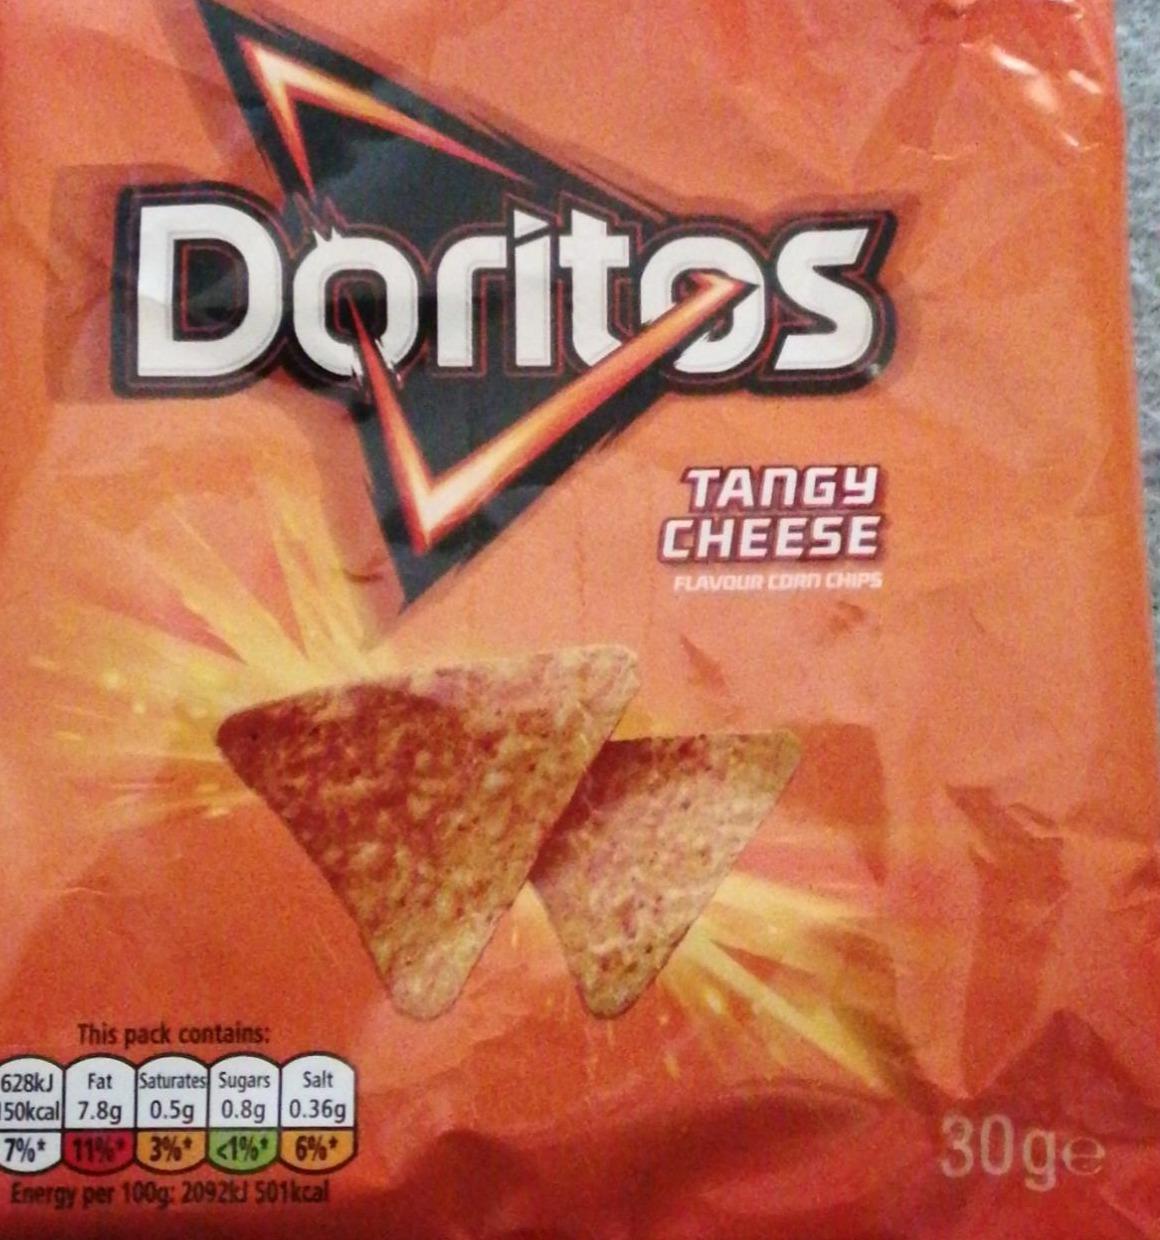 Zdjęcia - Tangy cheese Doritos